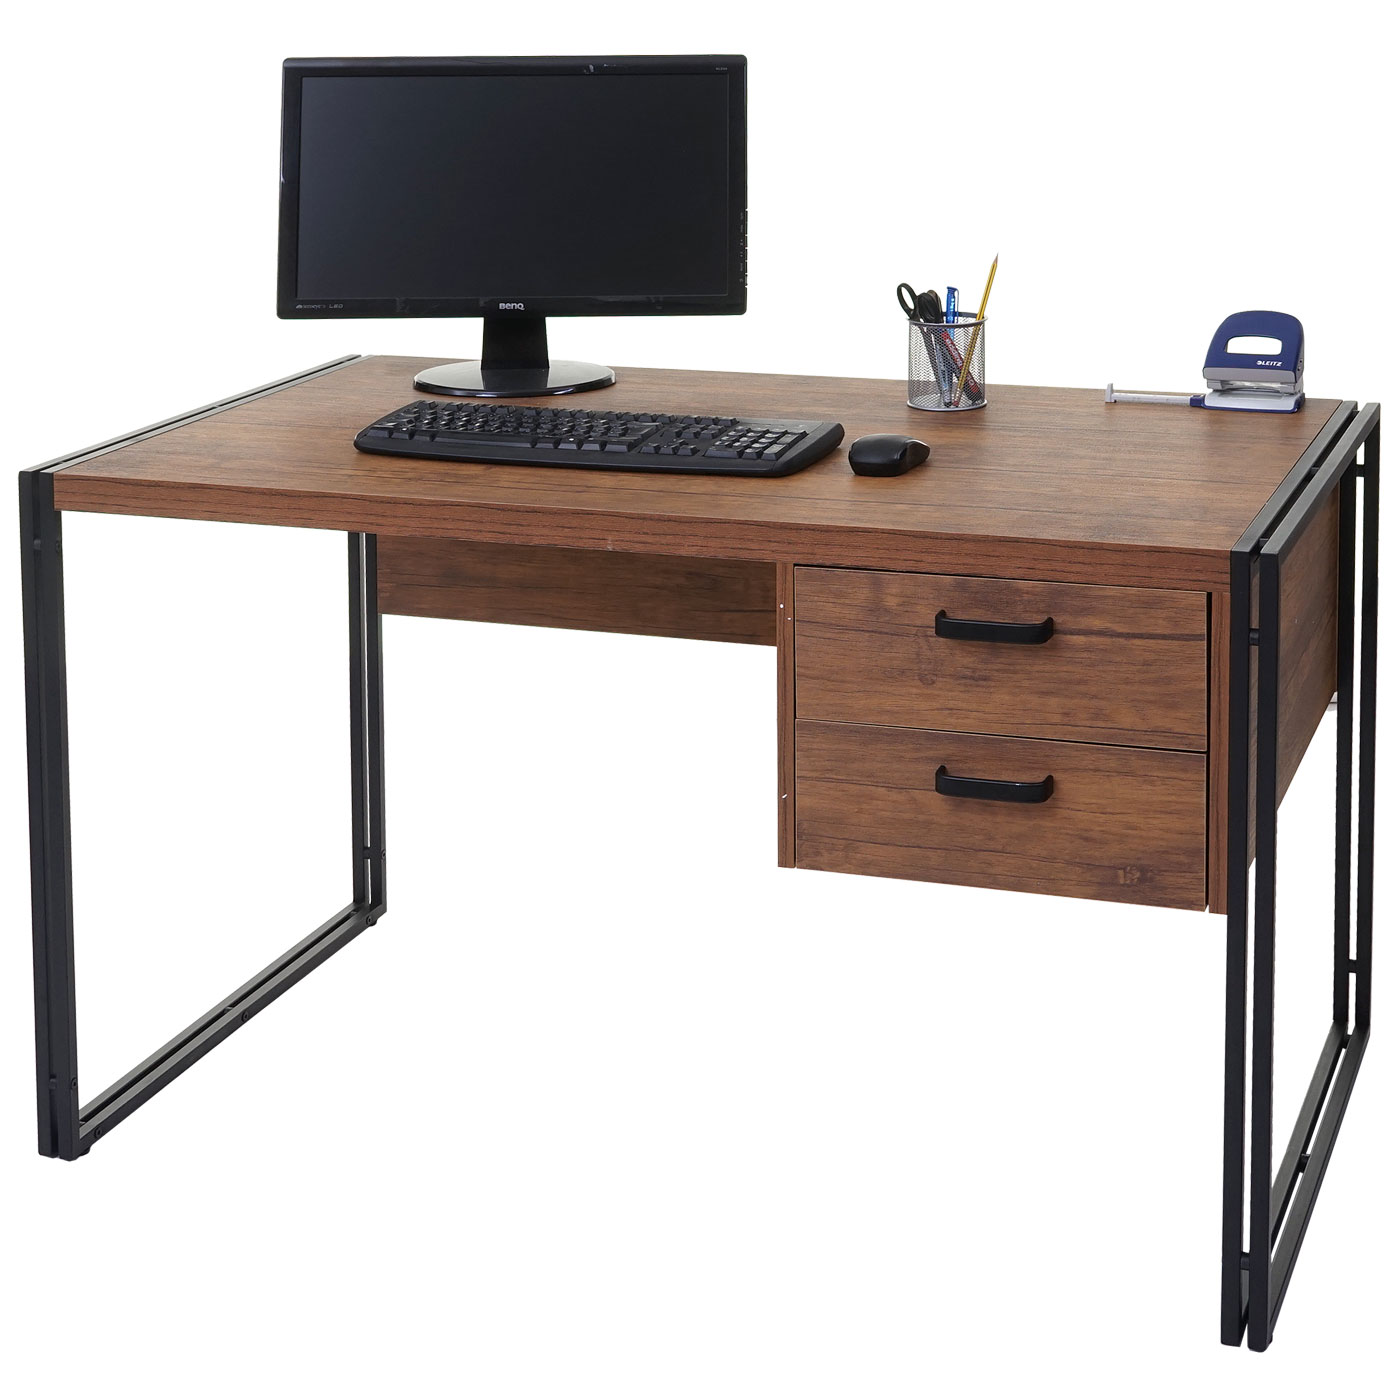 Столешница 1800. Стол 120 Activa Metal. Компьютерный стол. Письменный столик. Стол компьютерный офисный.